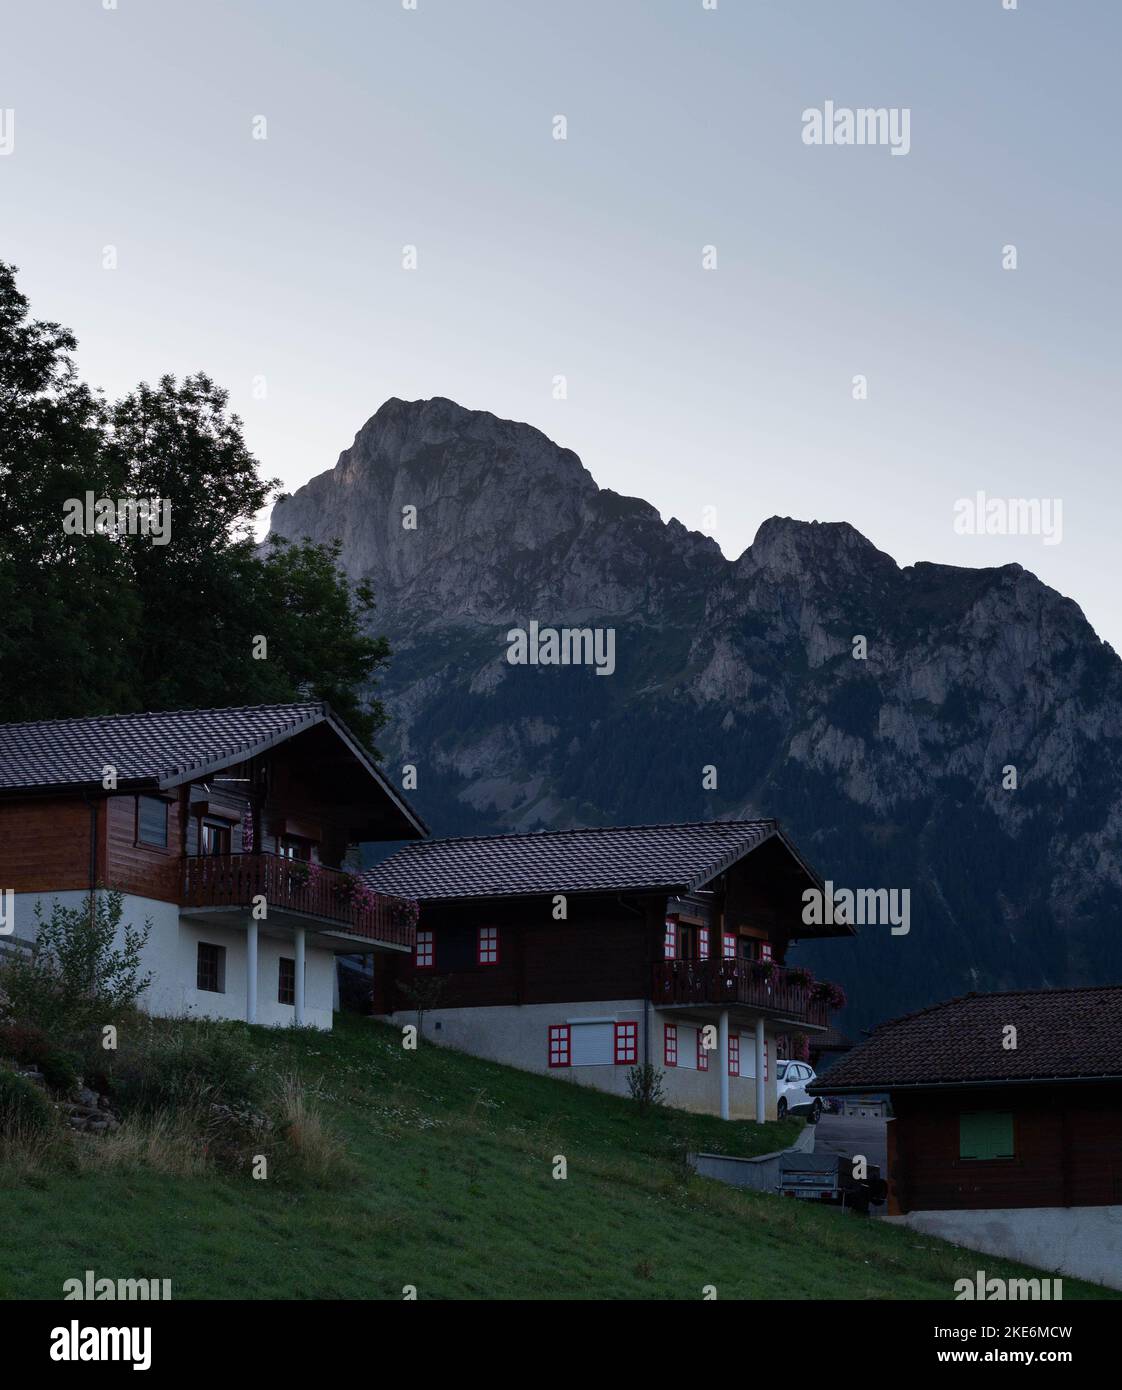 Une photo verticale de maisons de campagne de luxe sur une colline avec un fond de montagnes rugueuses Banque D'Images